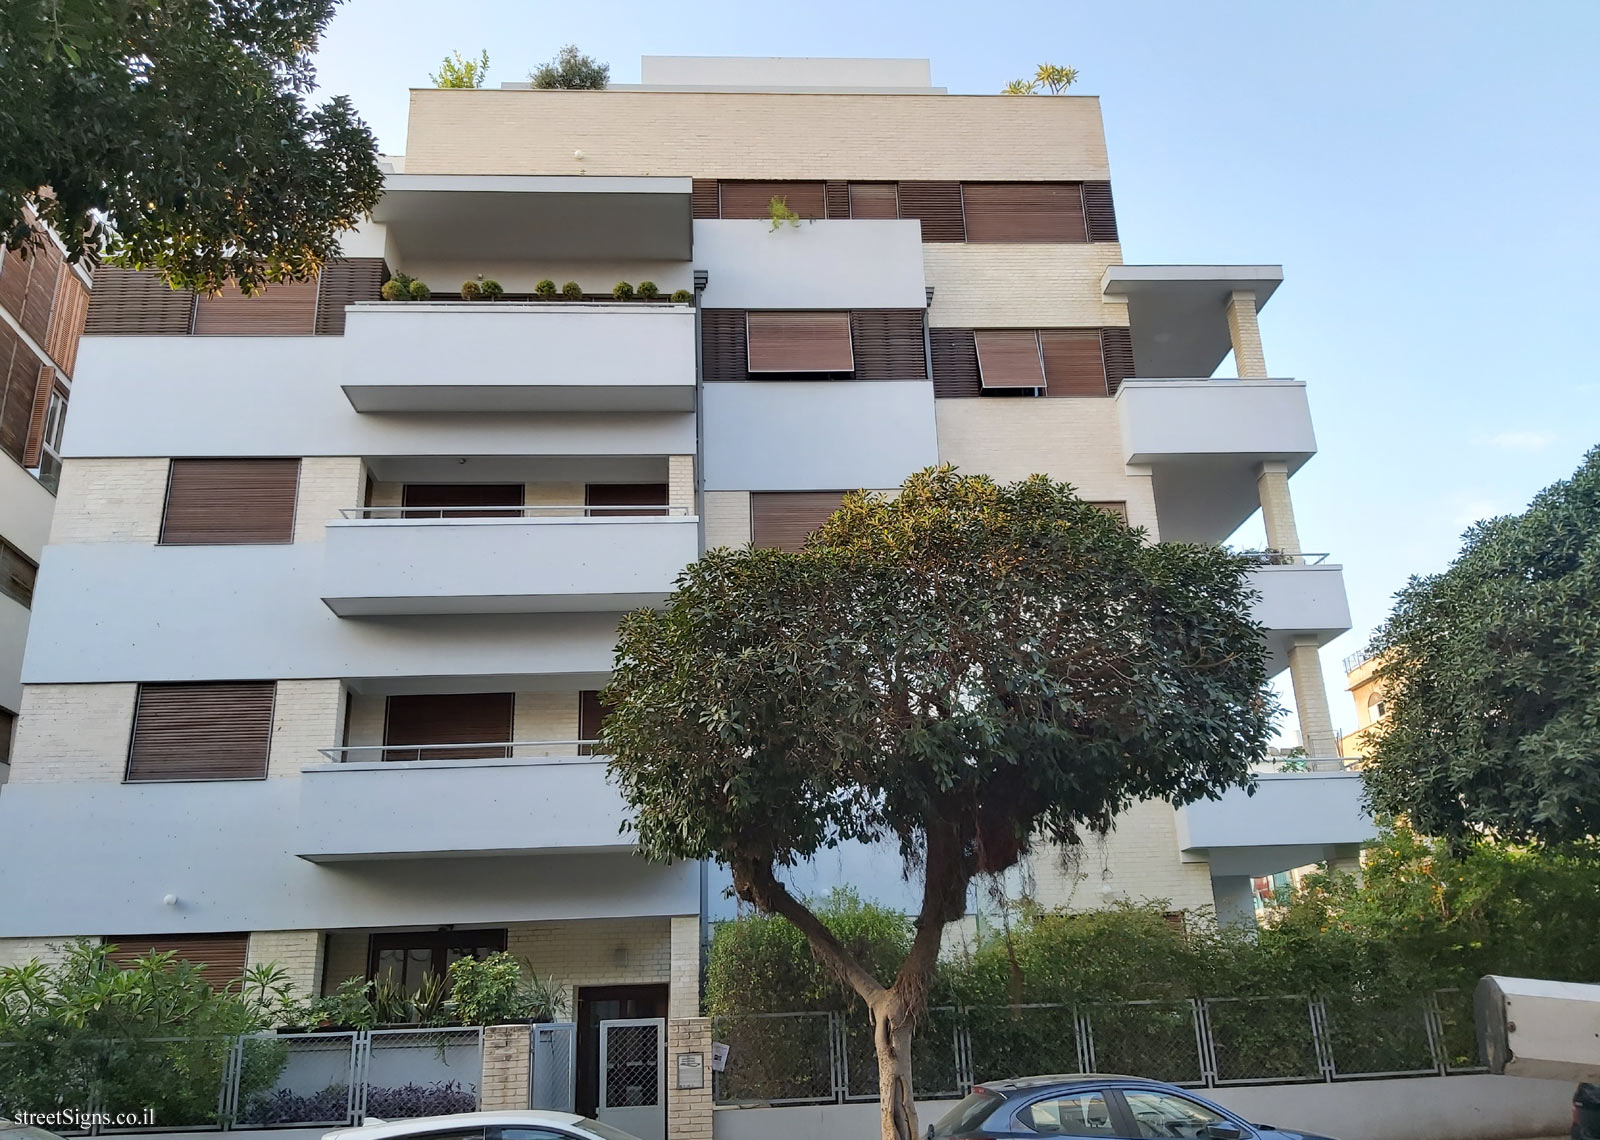 Tel Aviv - buildings for conservation - 40 Balfour - Risha Rosen House